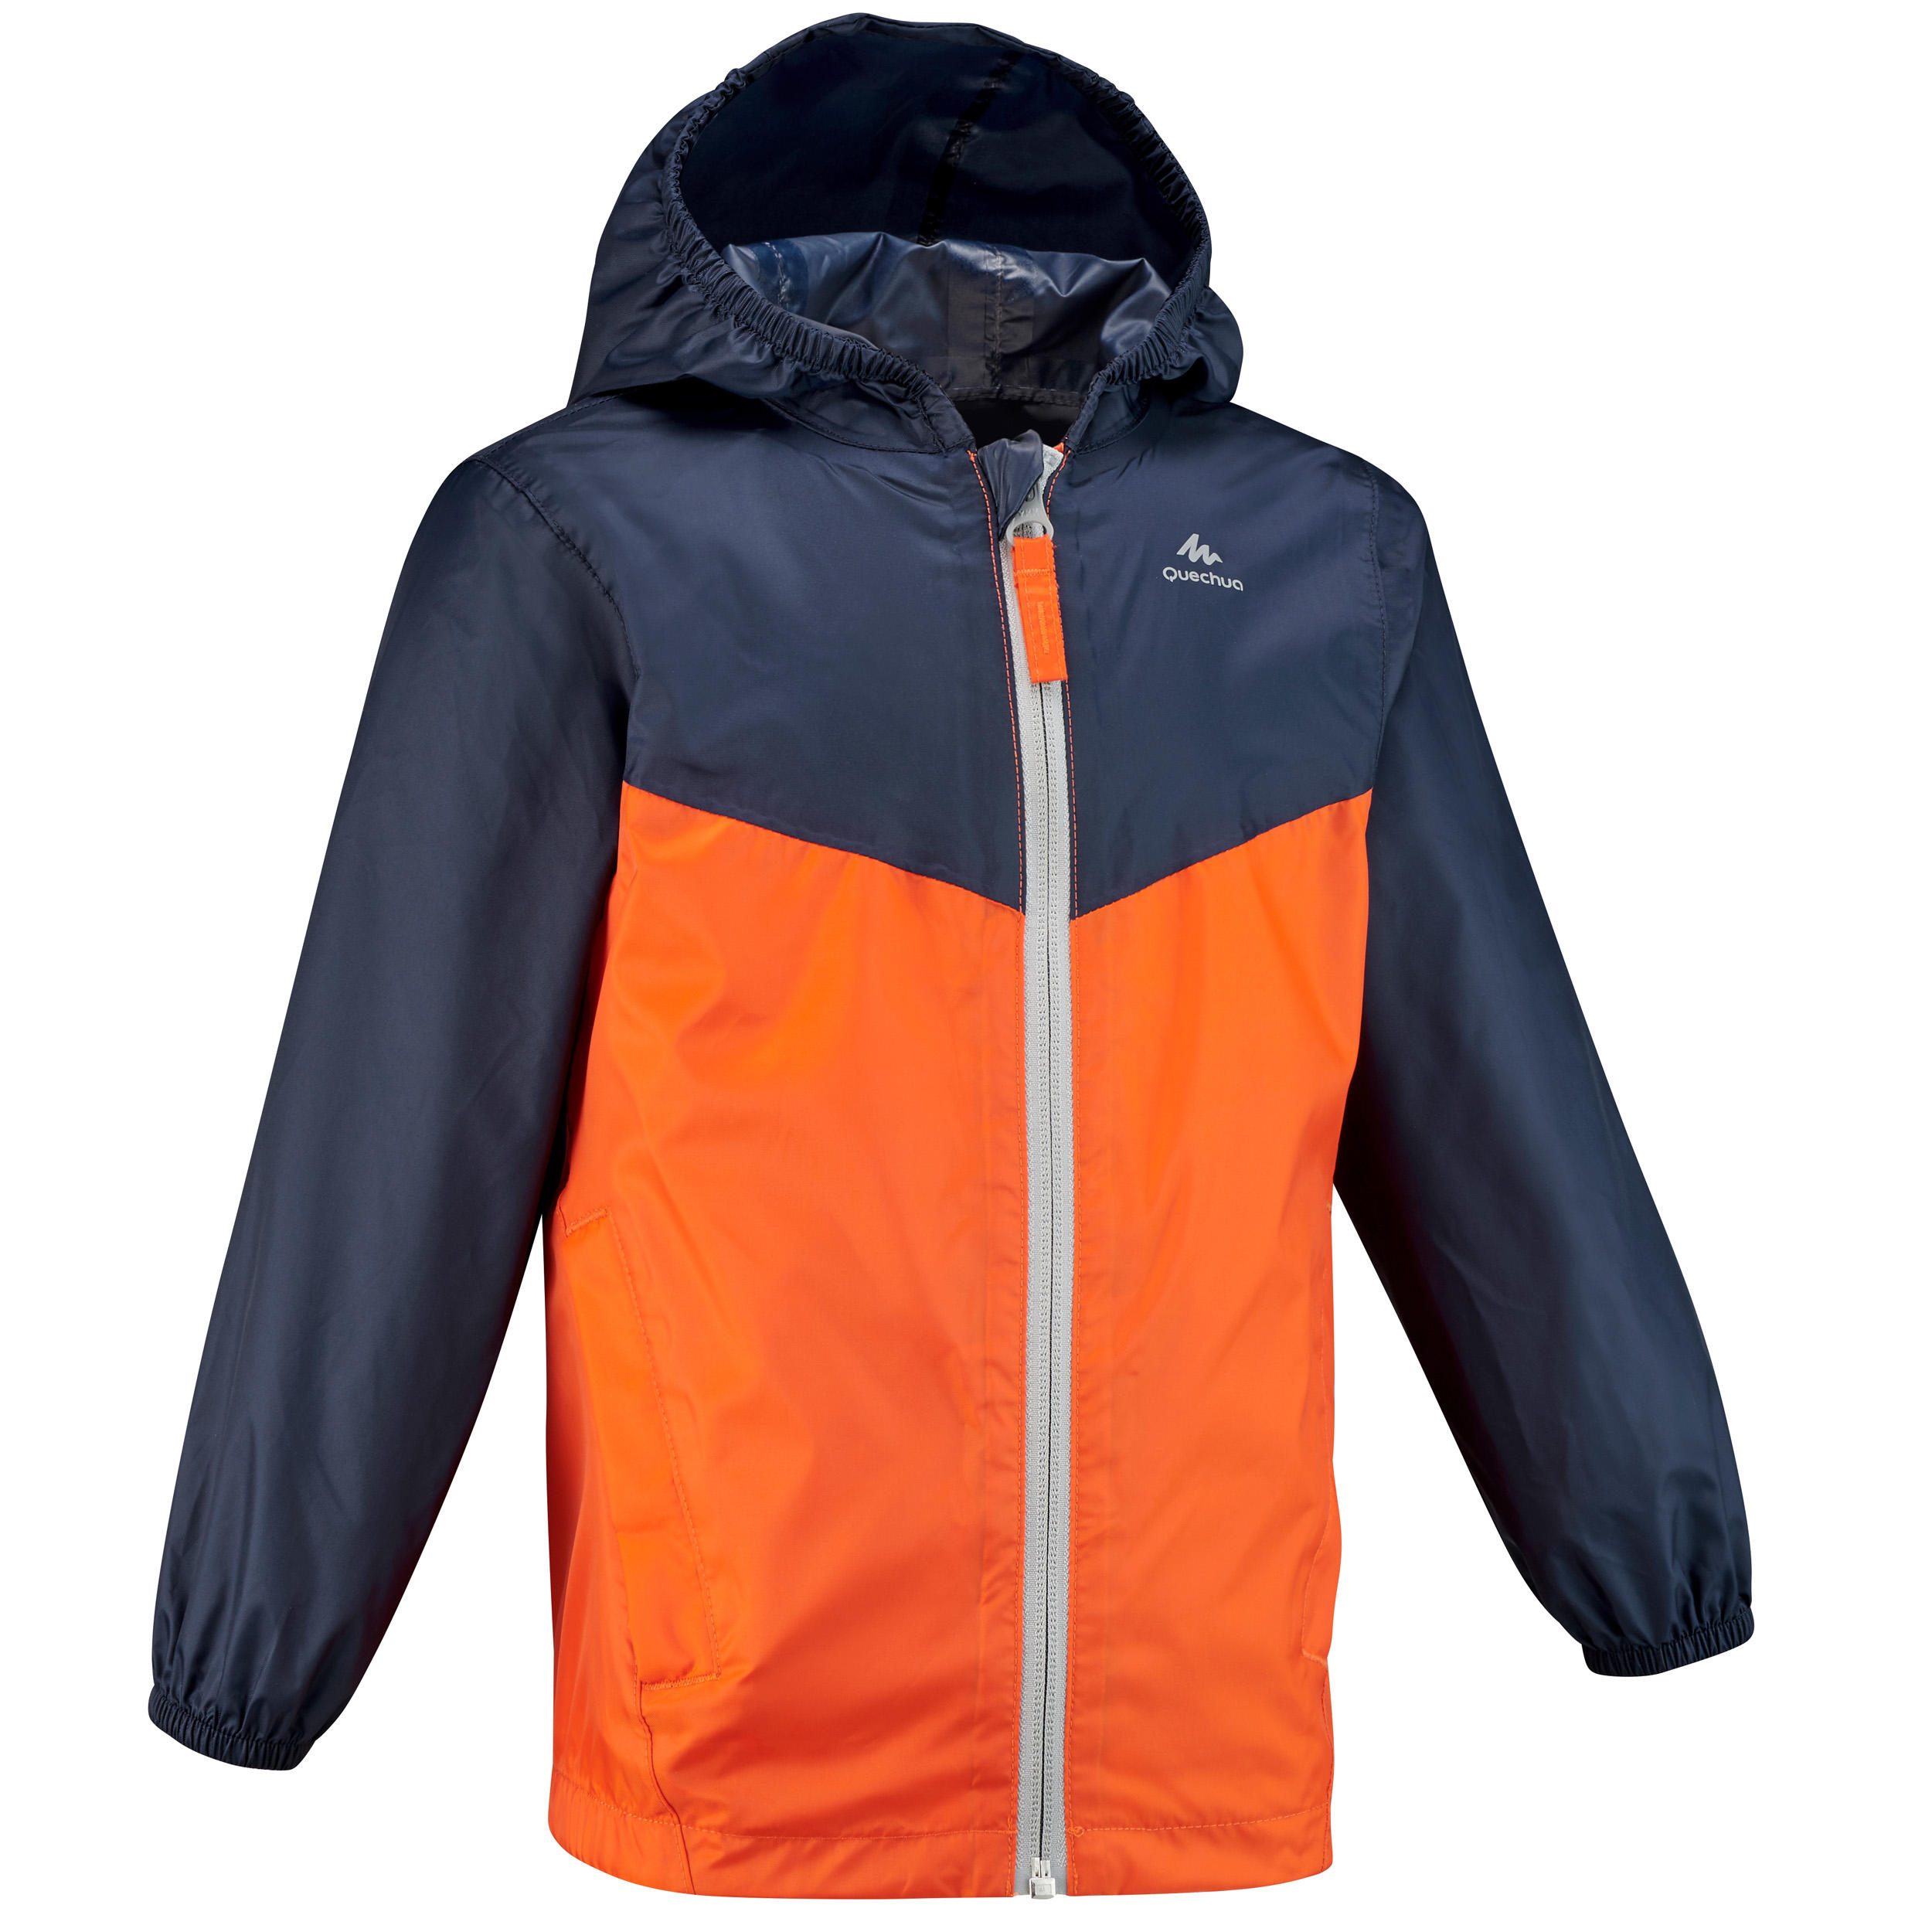 Jachetă Impermabilă Drumeție la munte MH150 Portocaliu Copii 2-6 ani La Oferta Online decathlon imagine La Oferta Online